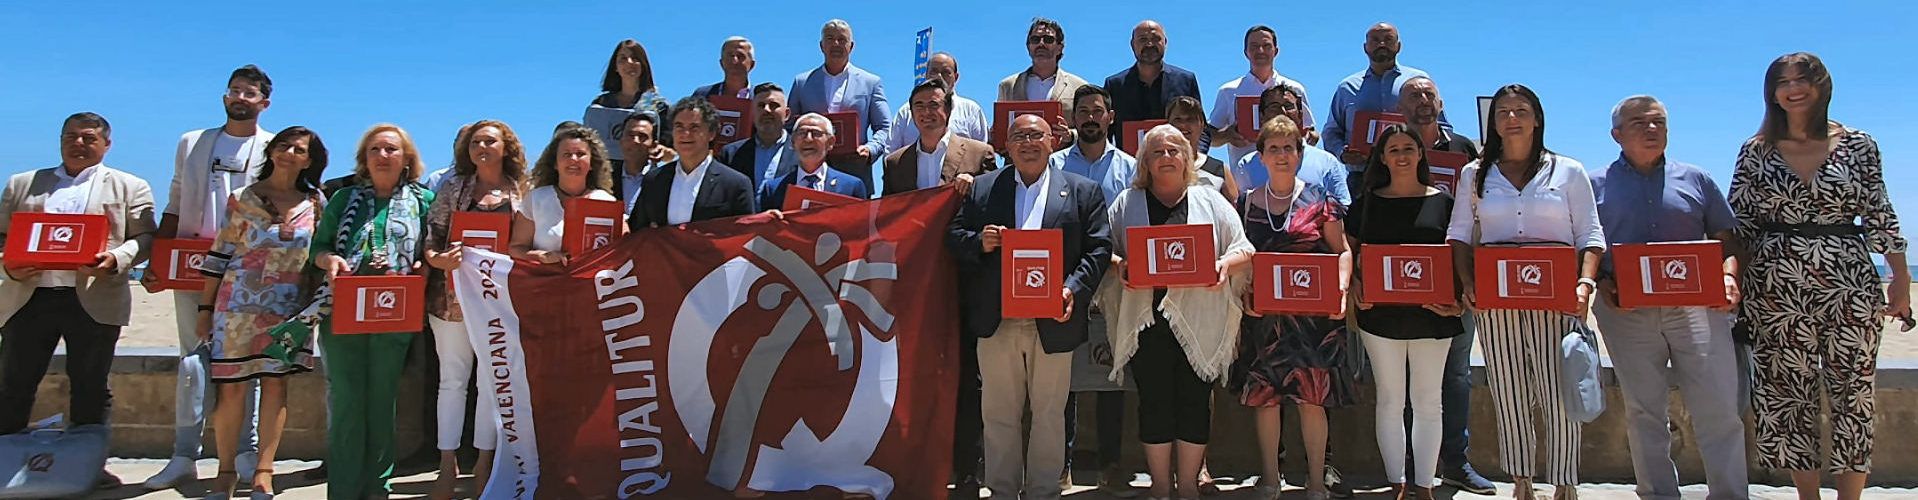 Vinaròs renova les distincions Qualitur que atorga Turisme Comunitat Valenciana